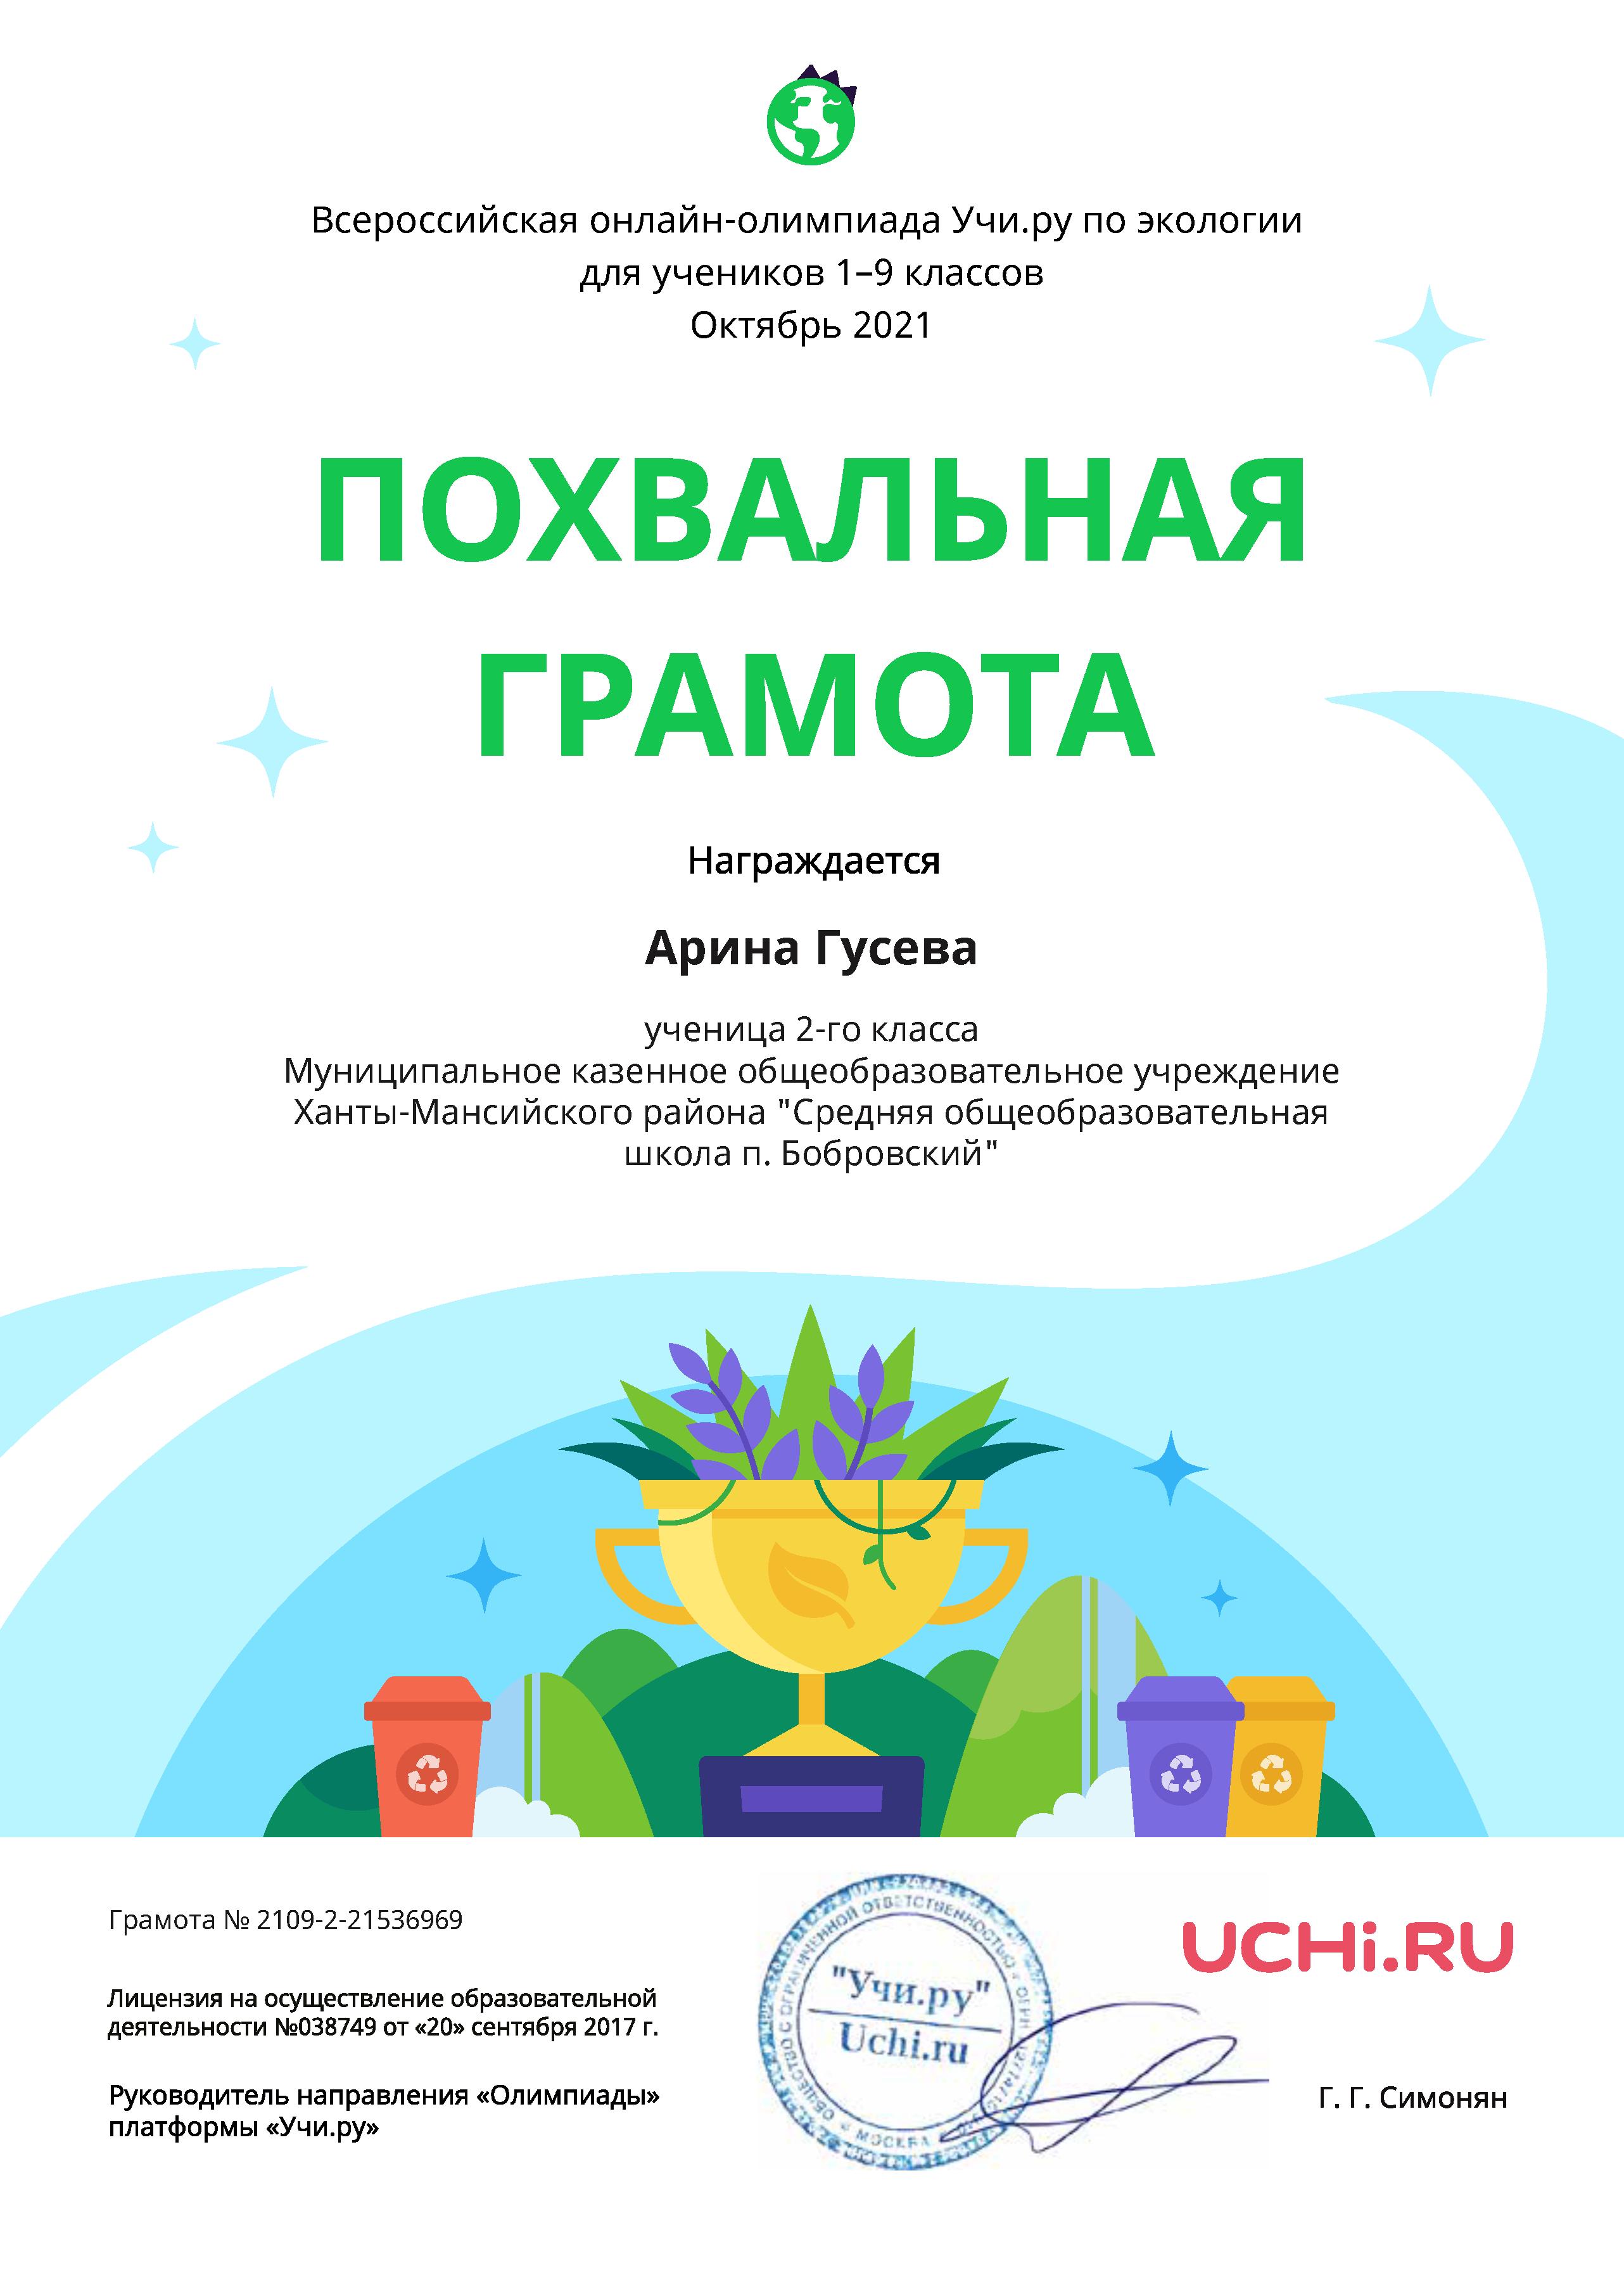 Гусева А.  Похвальная грамота. Всероссийская онлайн-олимпиада по экологии. 2021